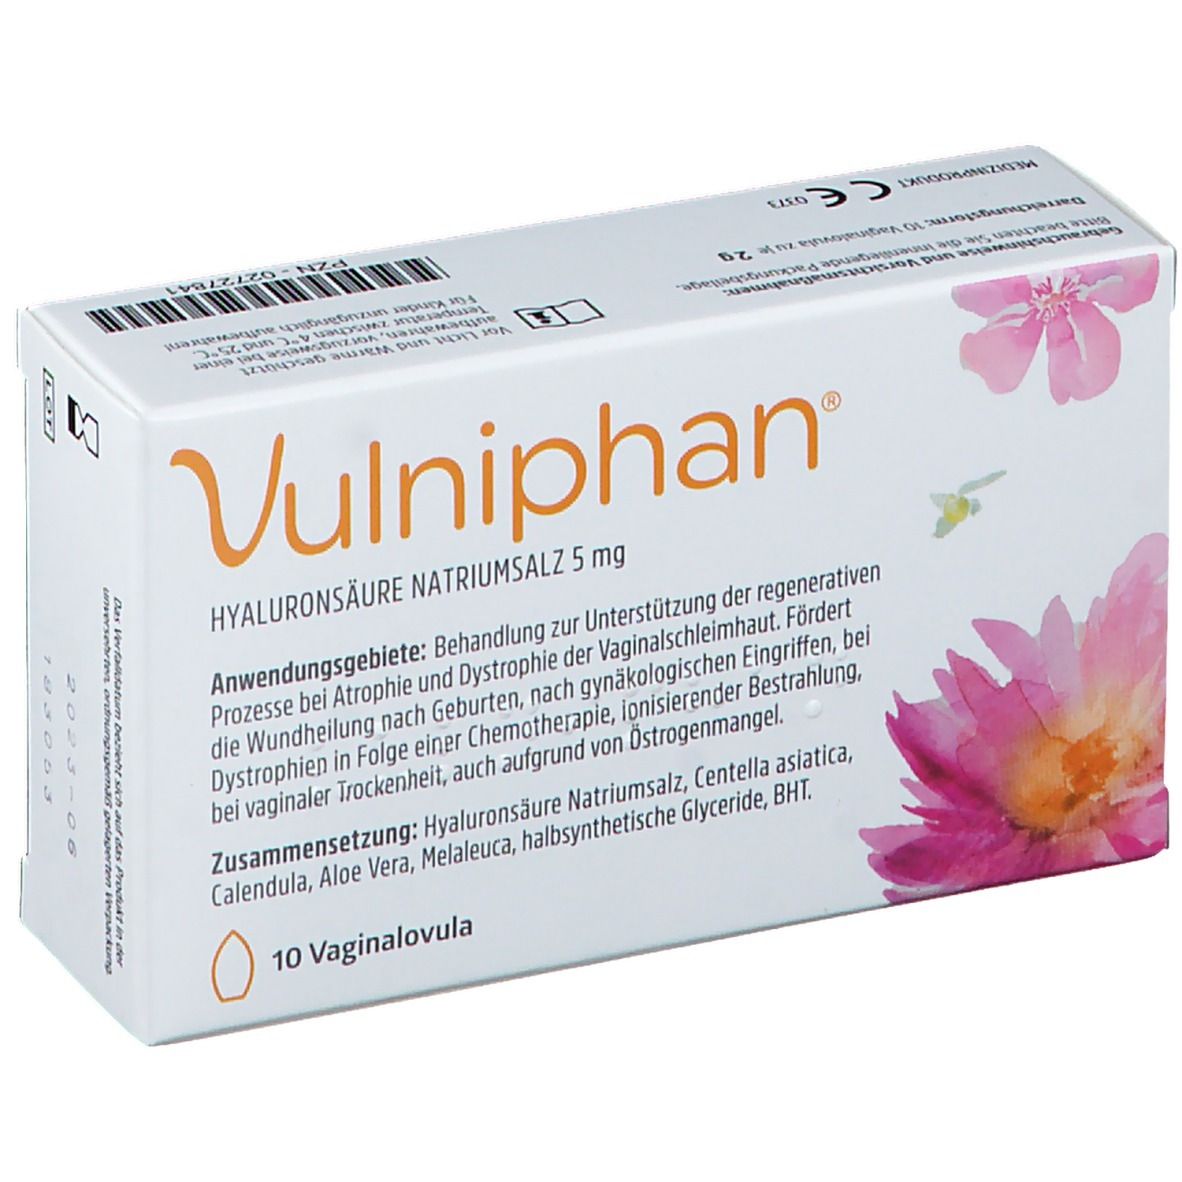 Vulniphan® Vaginalovula